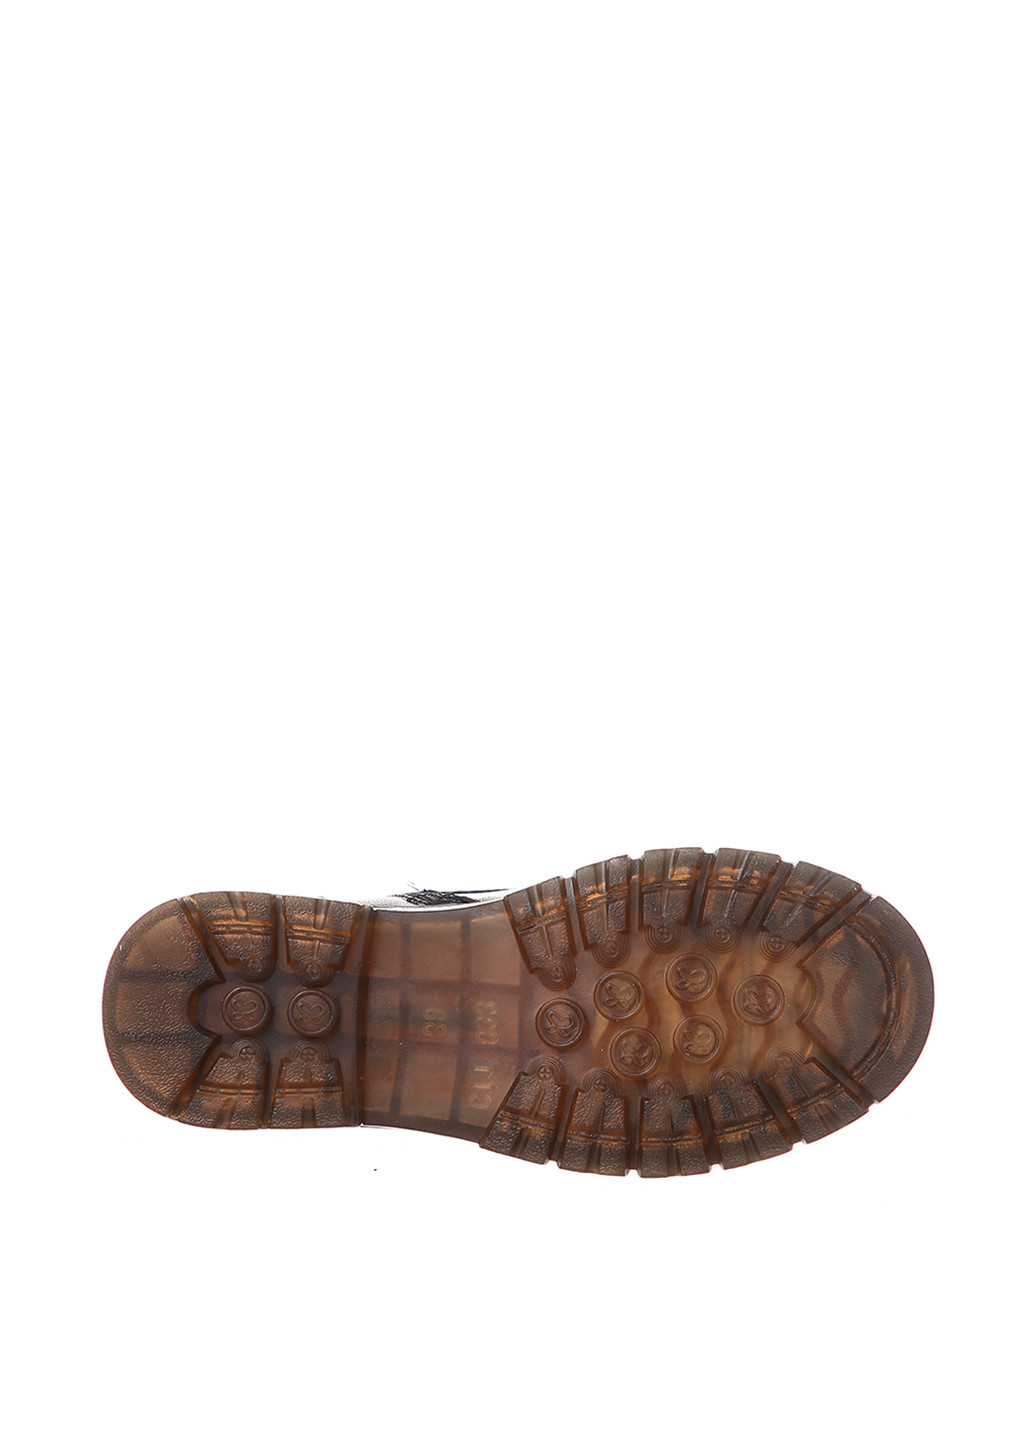 Осенние ботинки Meego с аппликацией, на тракторной подошве